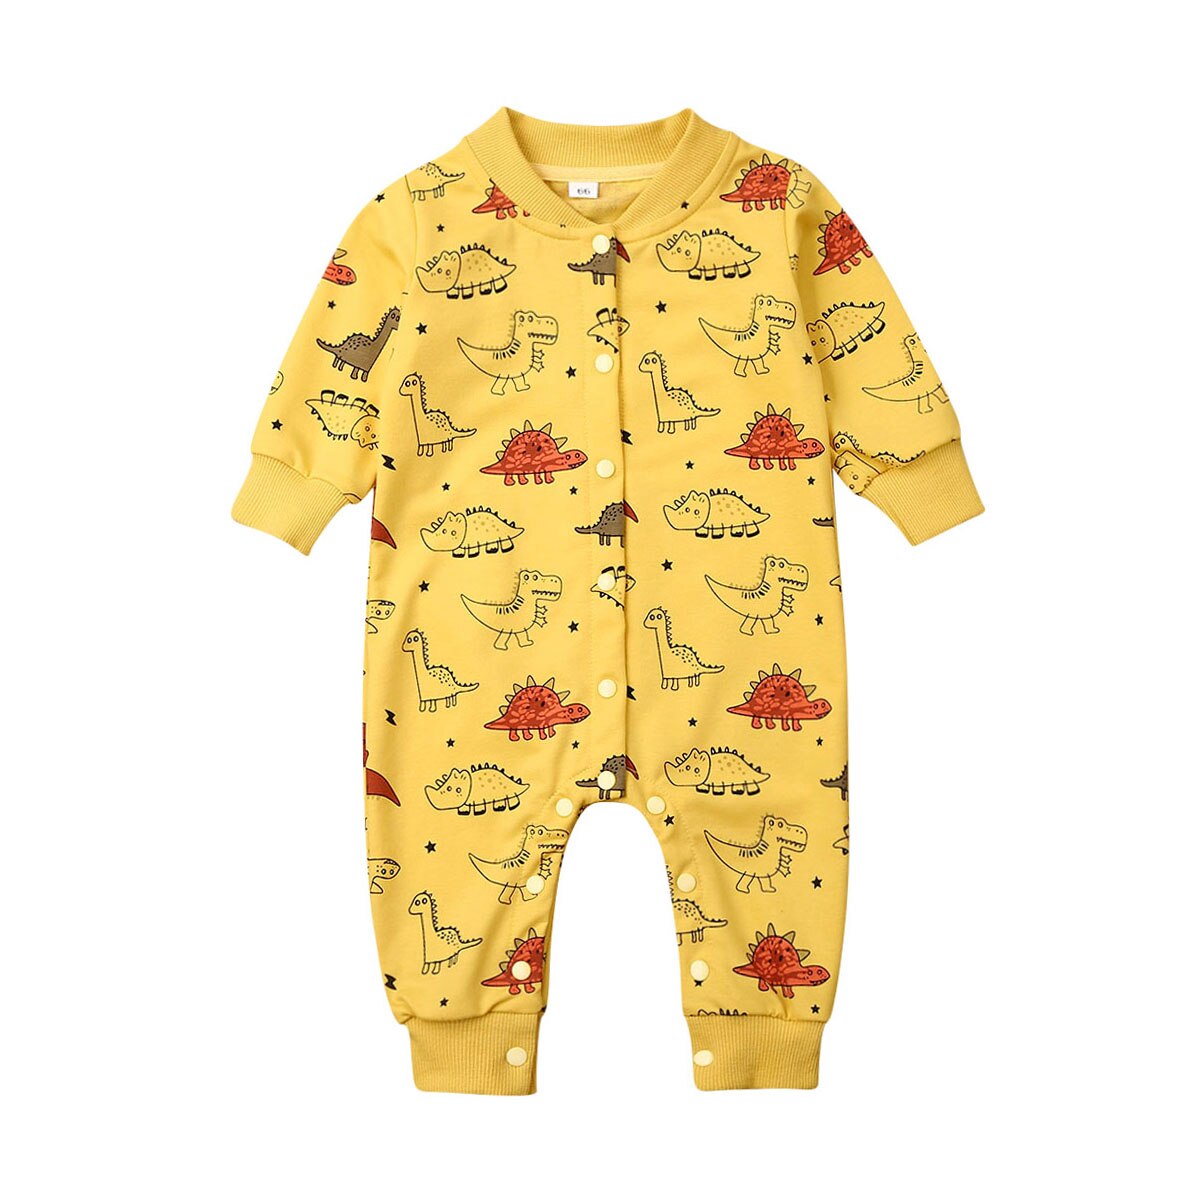 Toddler baby dreng pige varm bolde tøj langærmet dinosaur print enkelt breasted romper jumpsuit outfit: Gul / 18m